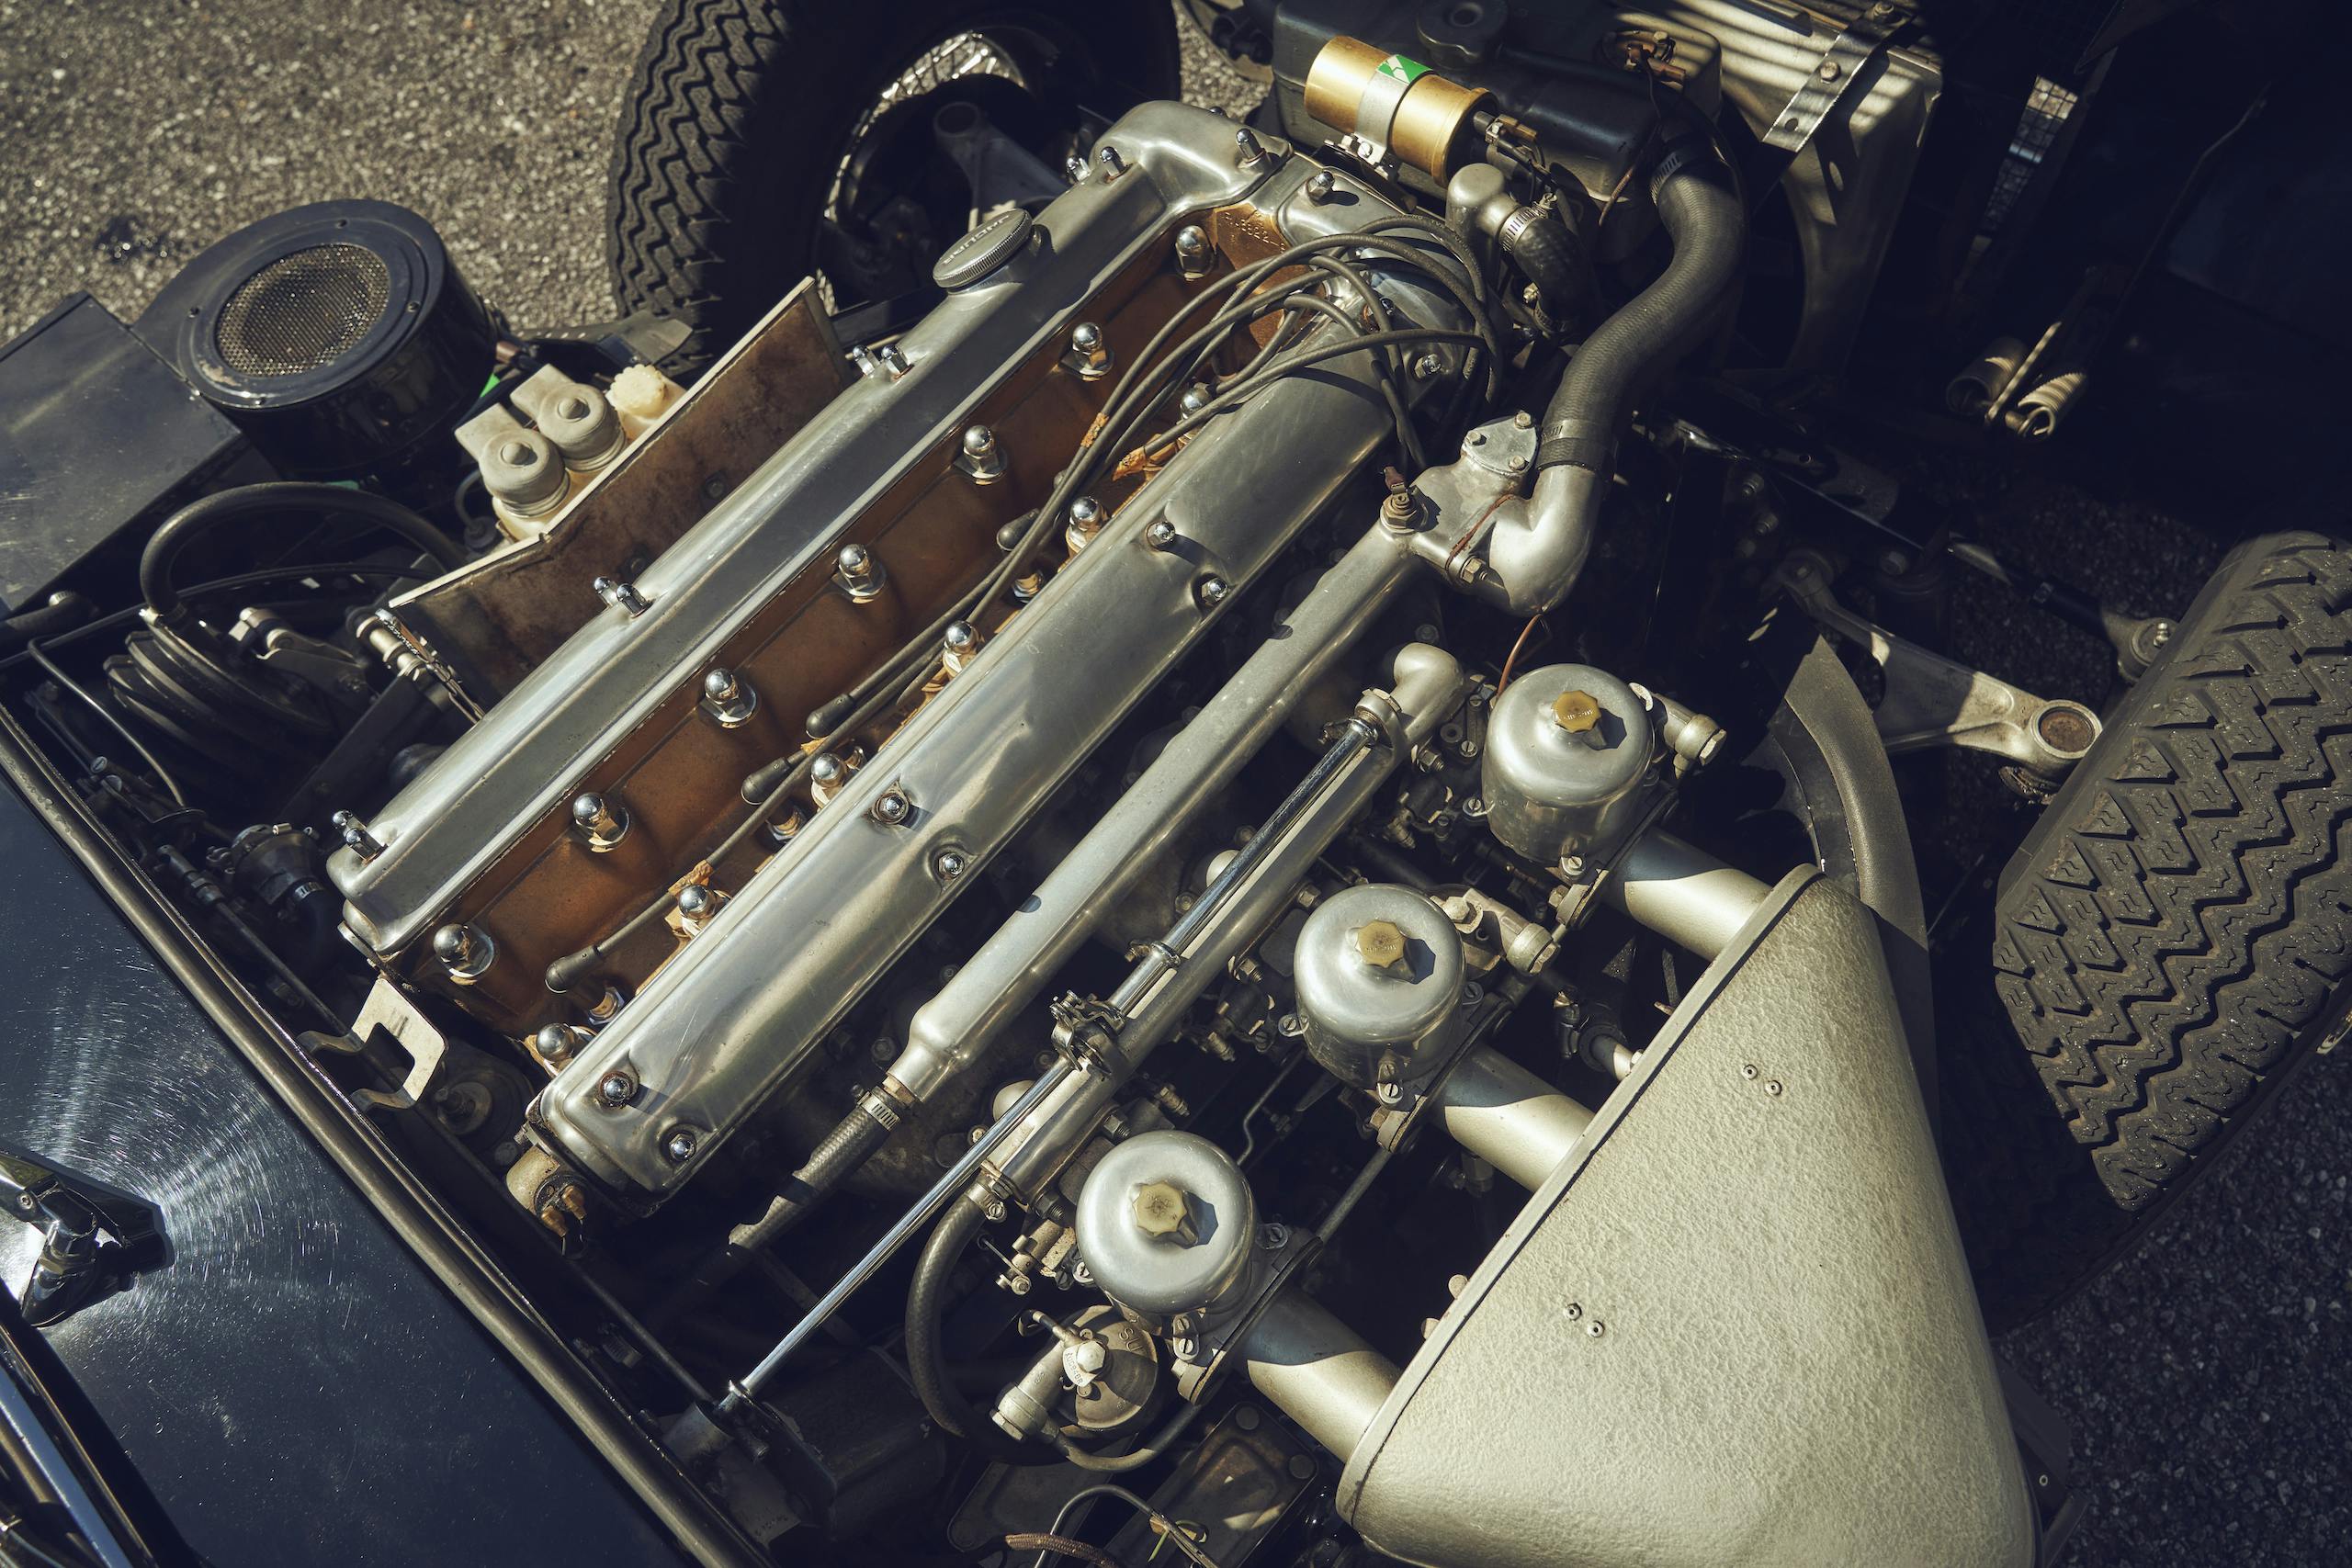 Jaguar E-Type engine overhead